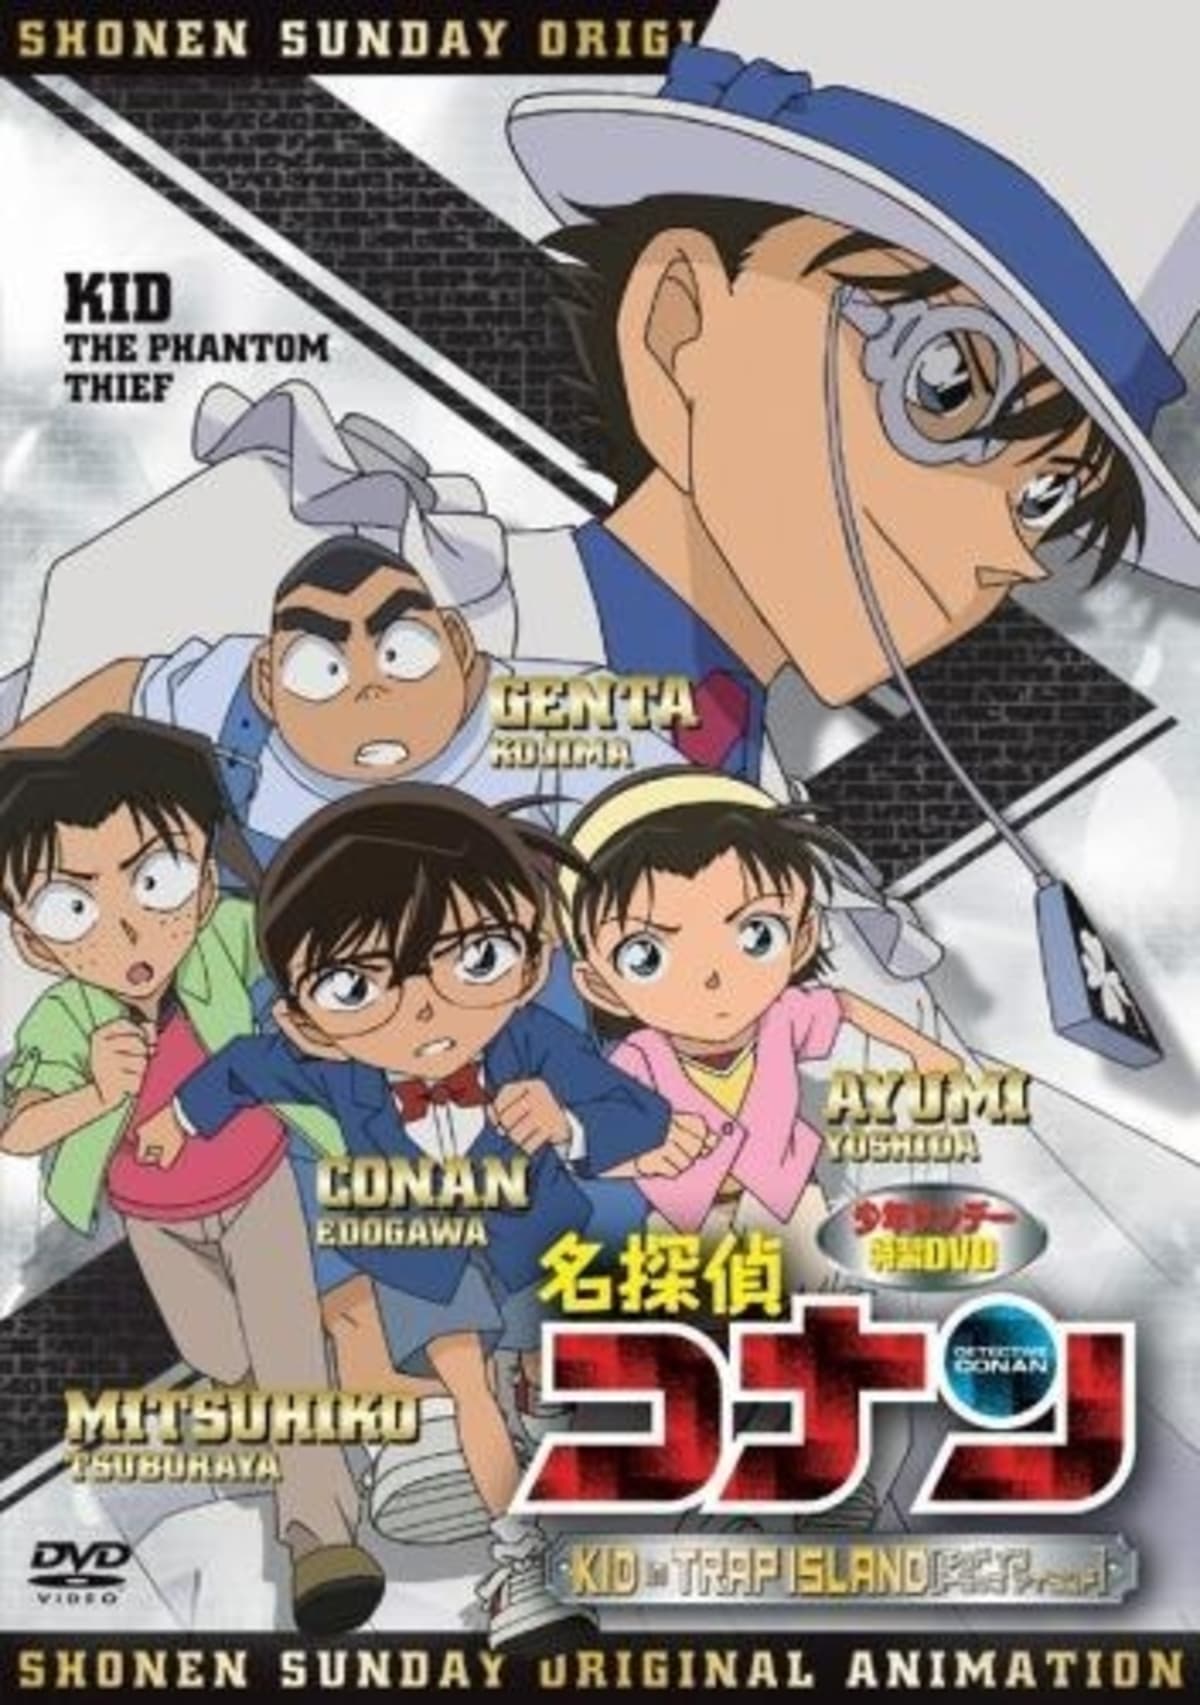 Detective Conan OVA 10 - Kid in Trap Island